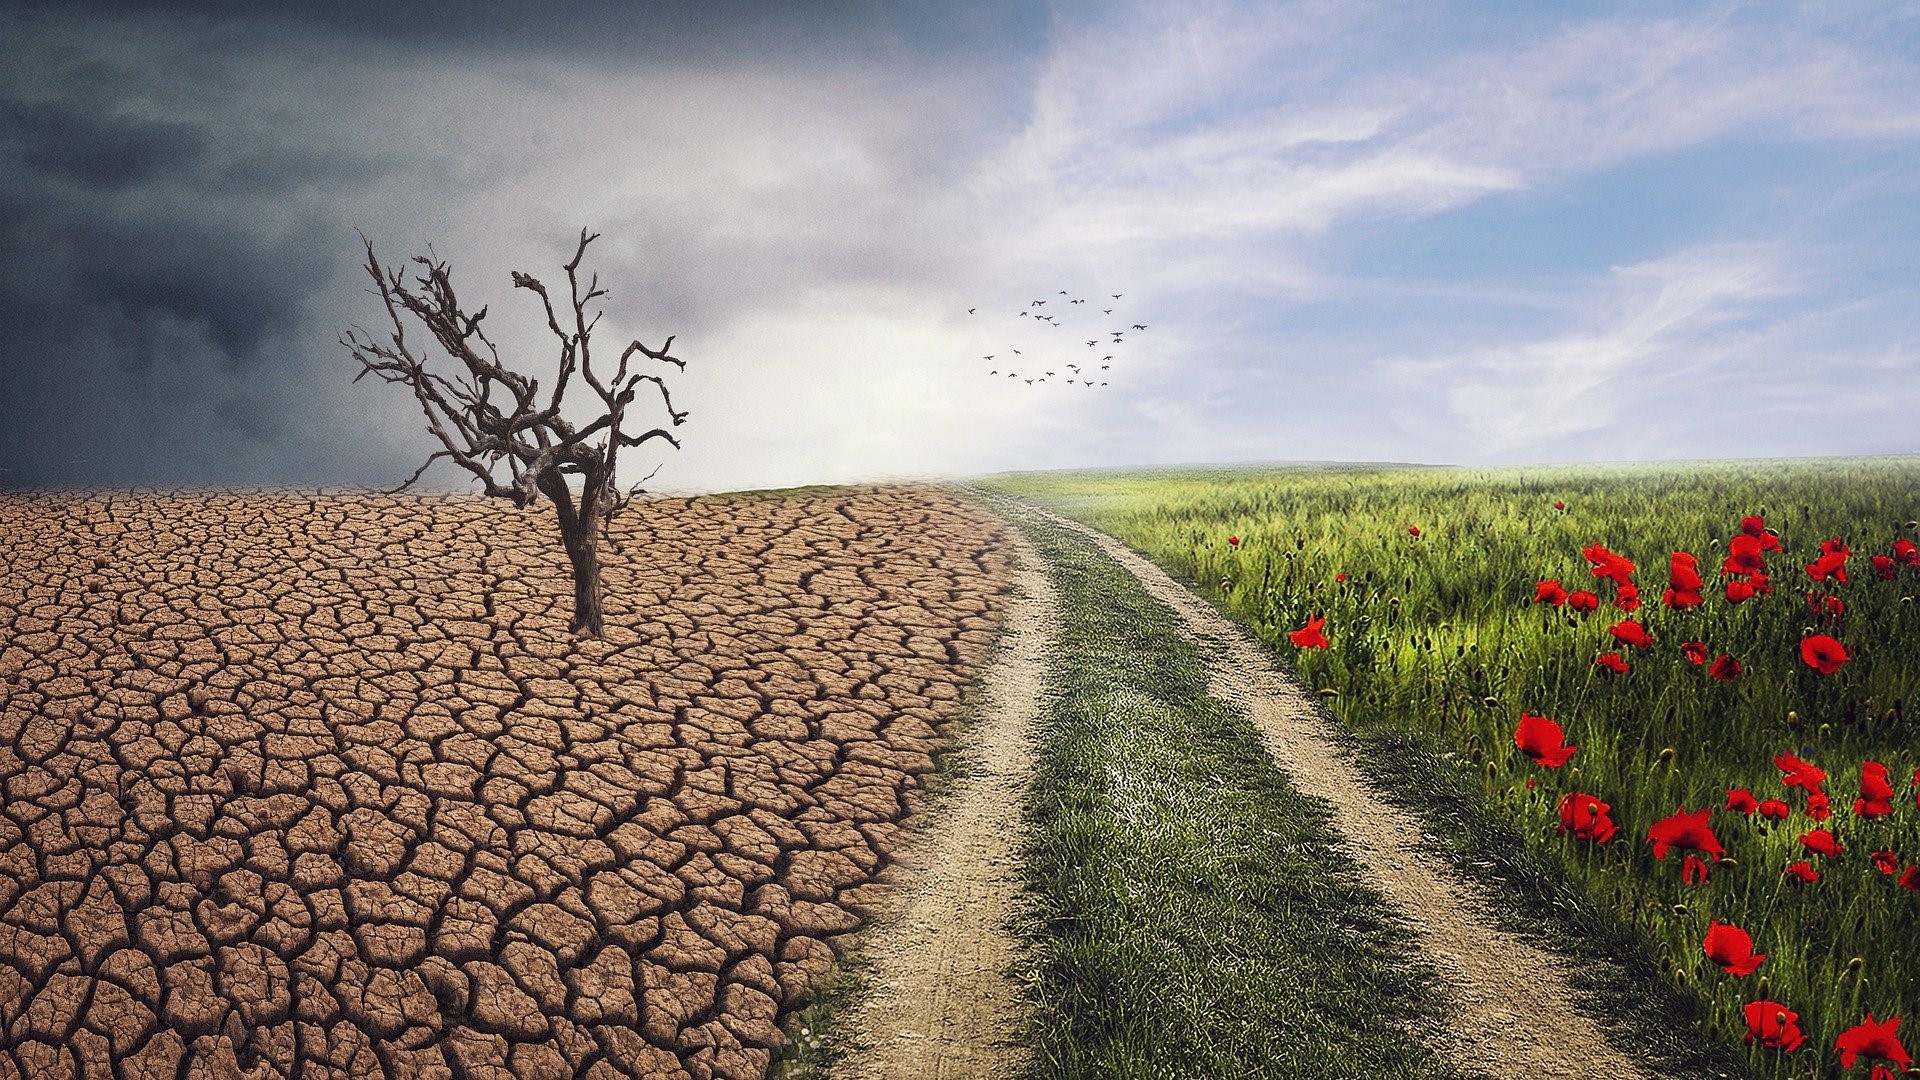 Collage aus zwei Bildern: auf der linken Bildhälfte steht ein dürrer Baum auf ausgedorrter Erde, auf der rechten Bildhälfte läuft ein Feldweg an einem rot blühenden Mohnfeld vorbei.